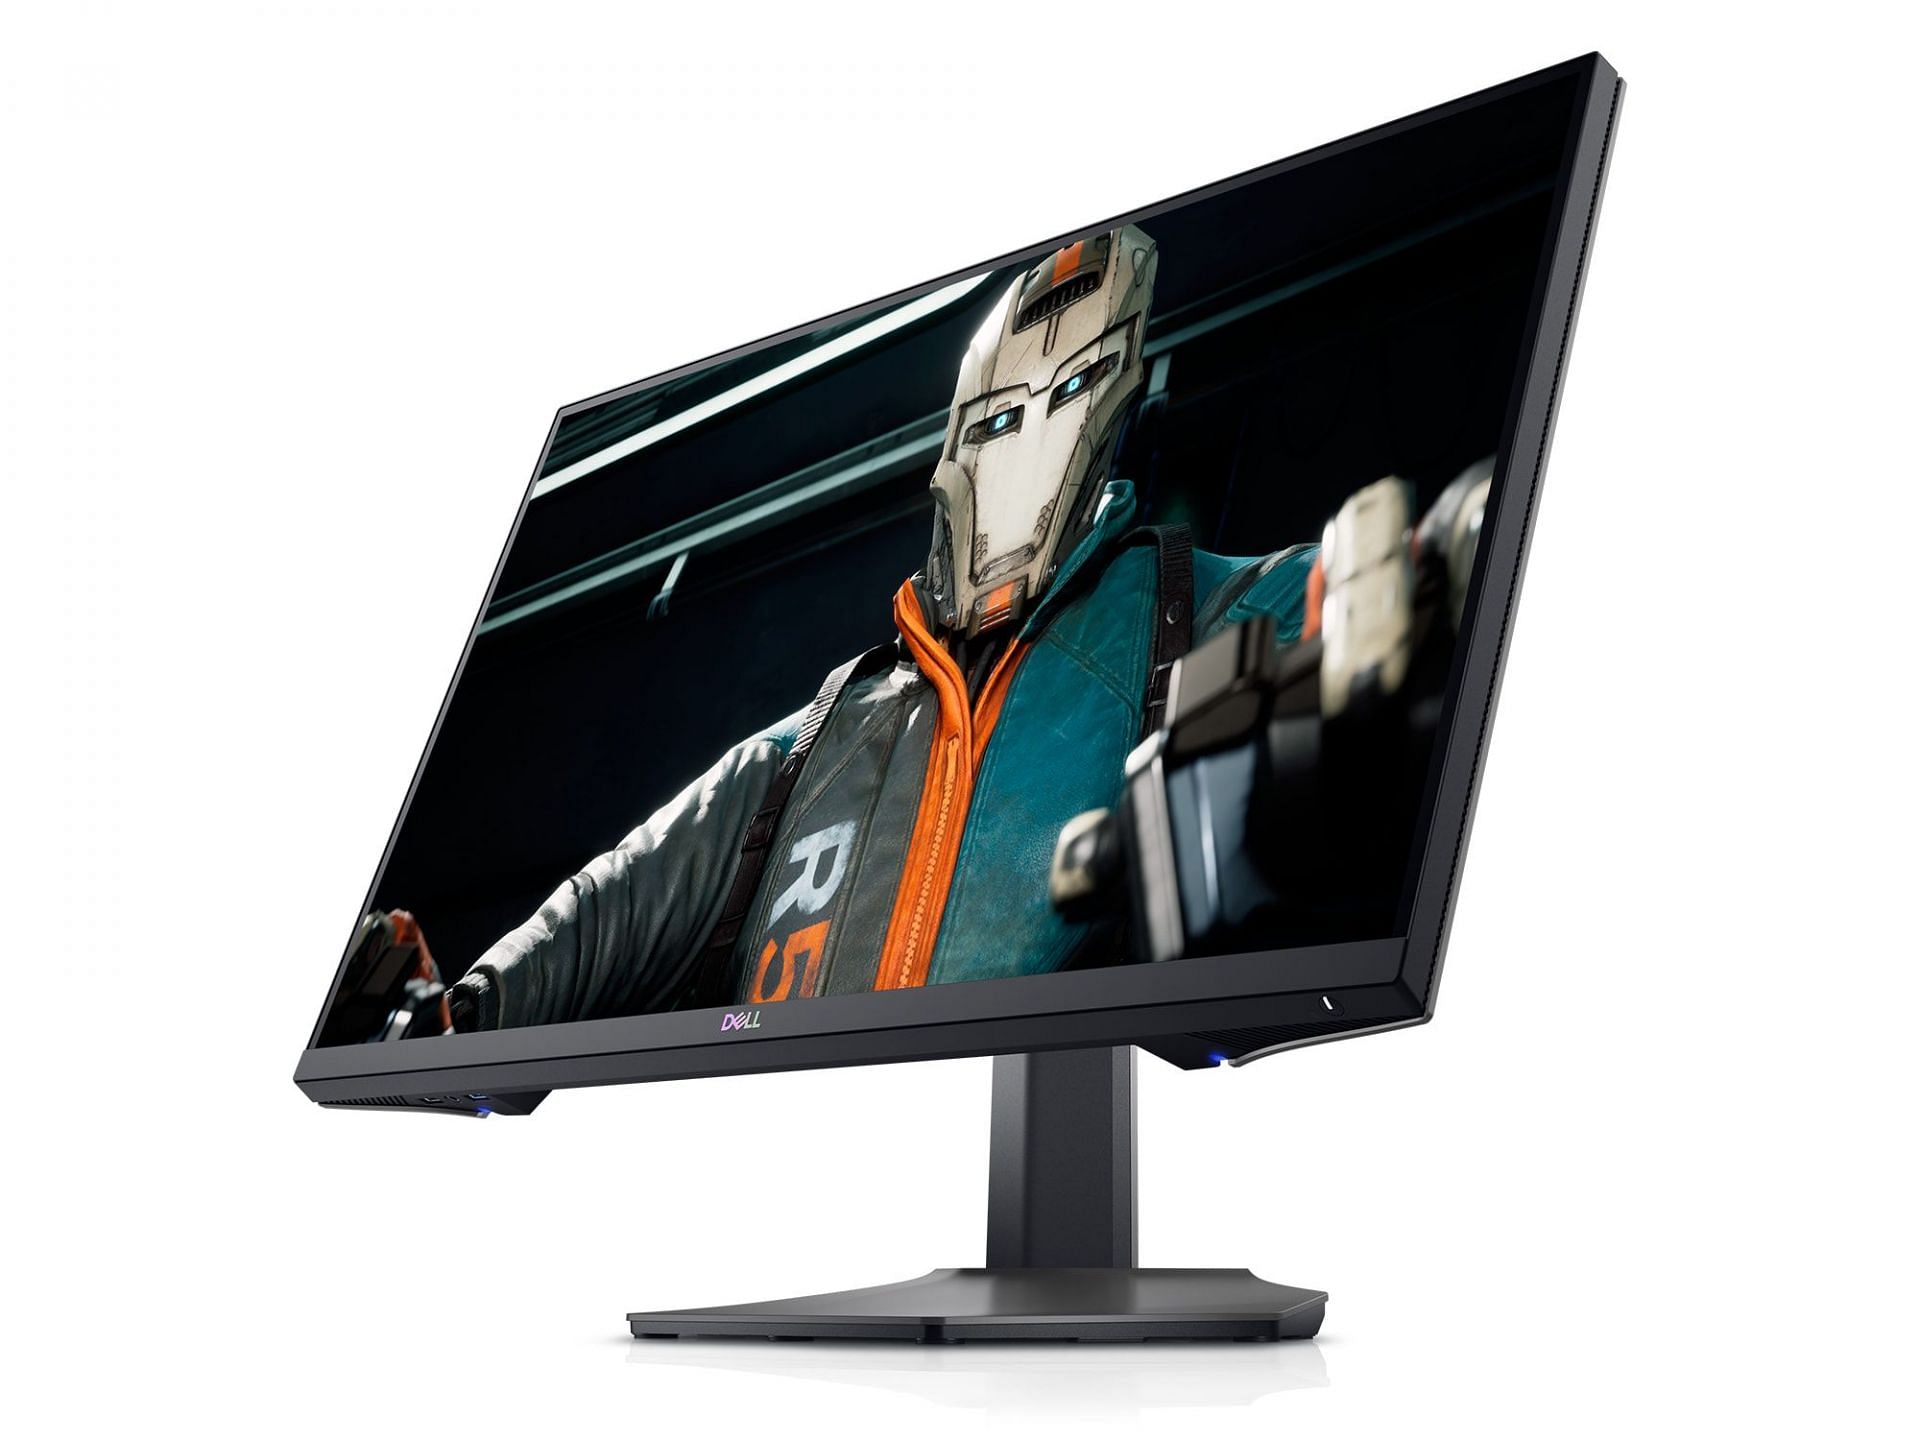 The Dell S2721DGF 27-inch gaming monitor (Image via Dell)